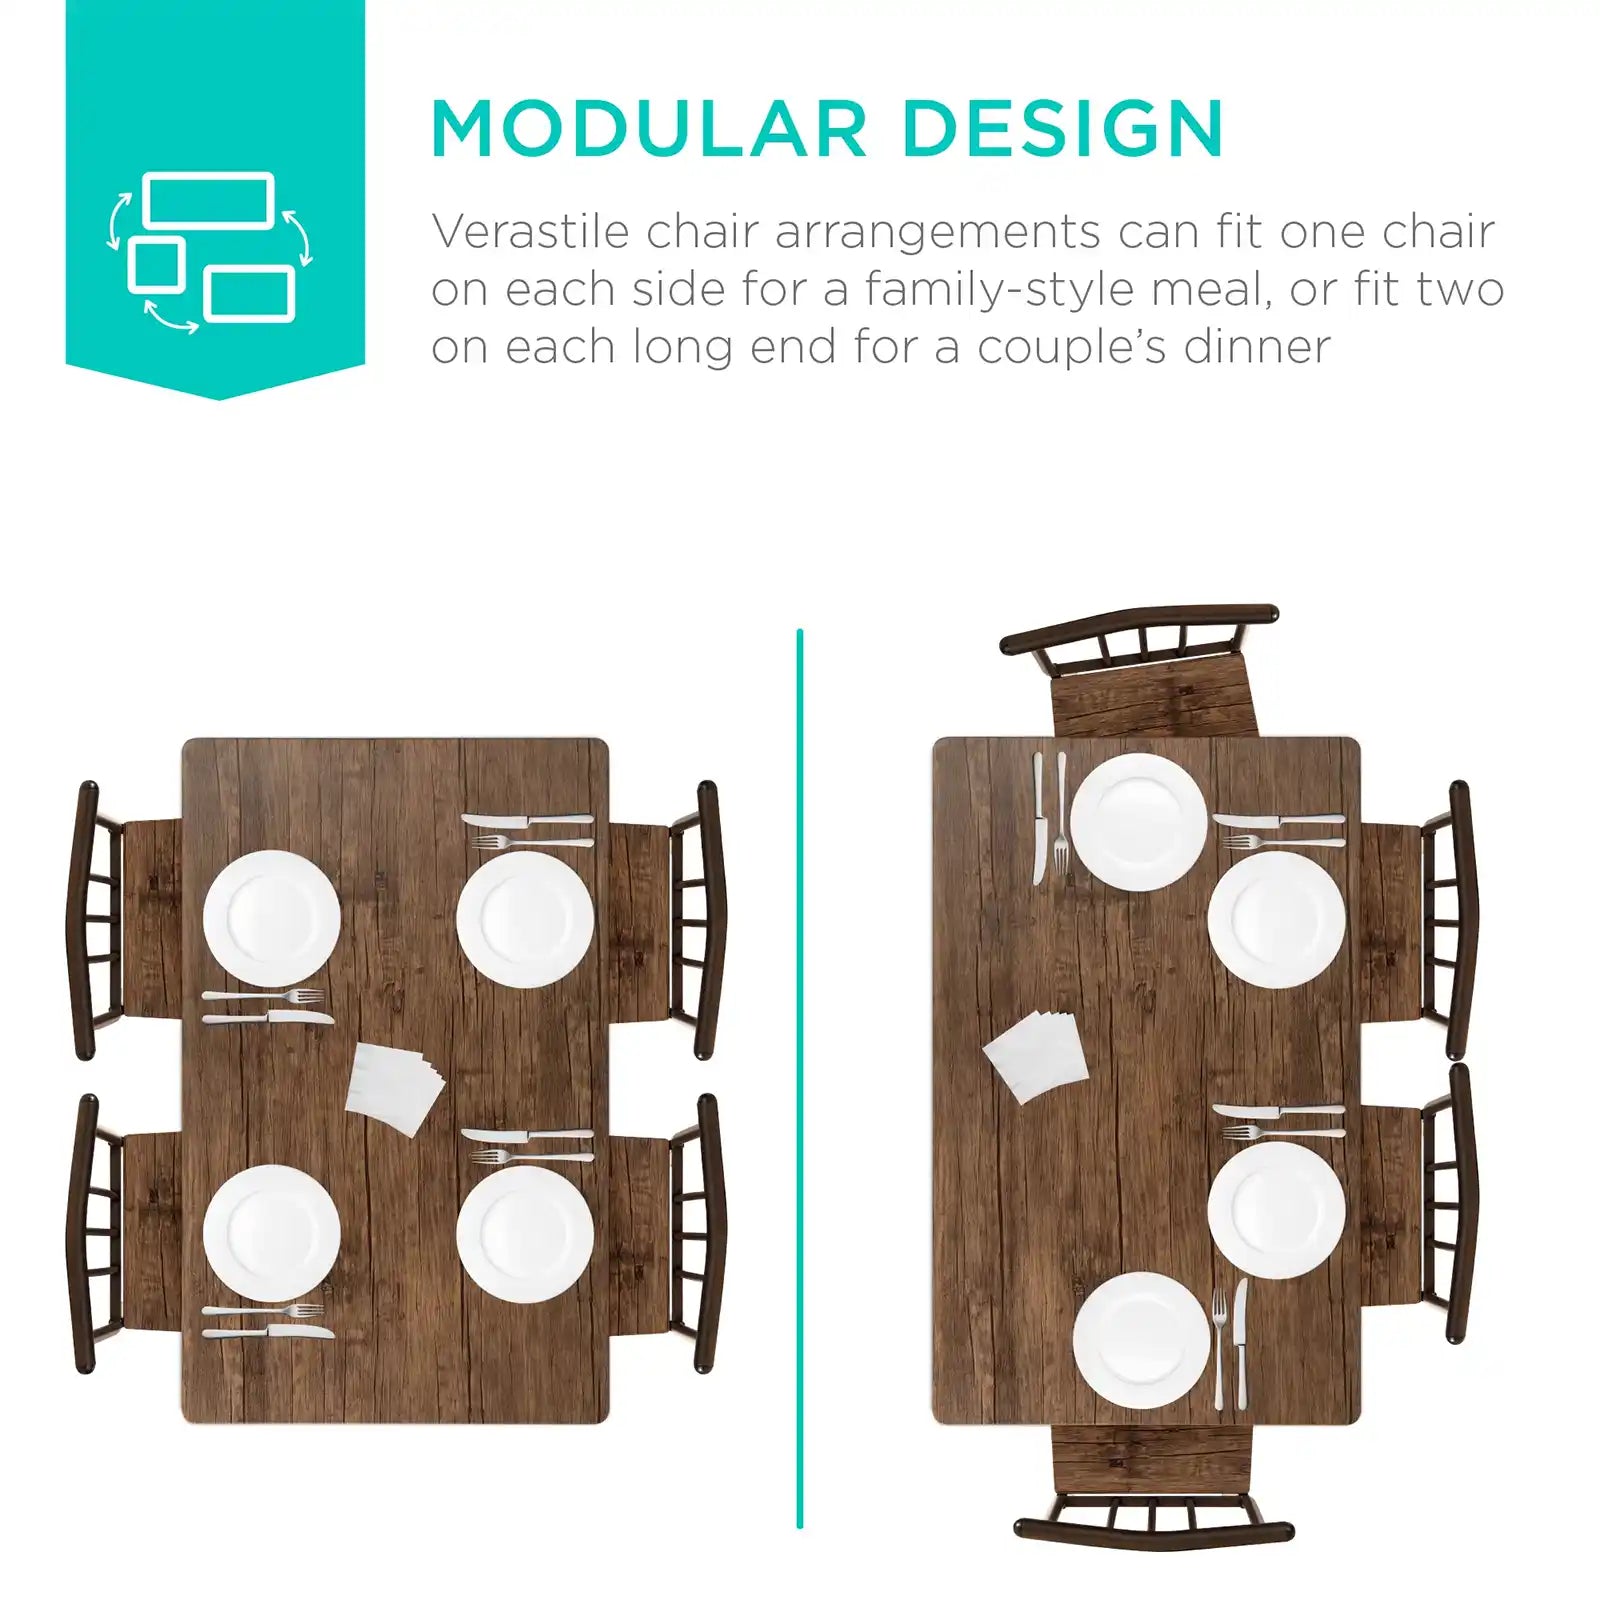 Juego de comedor rectangular de madera y metal moderno para interiores de 5 piezas con 4 sillas